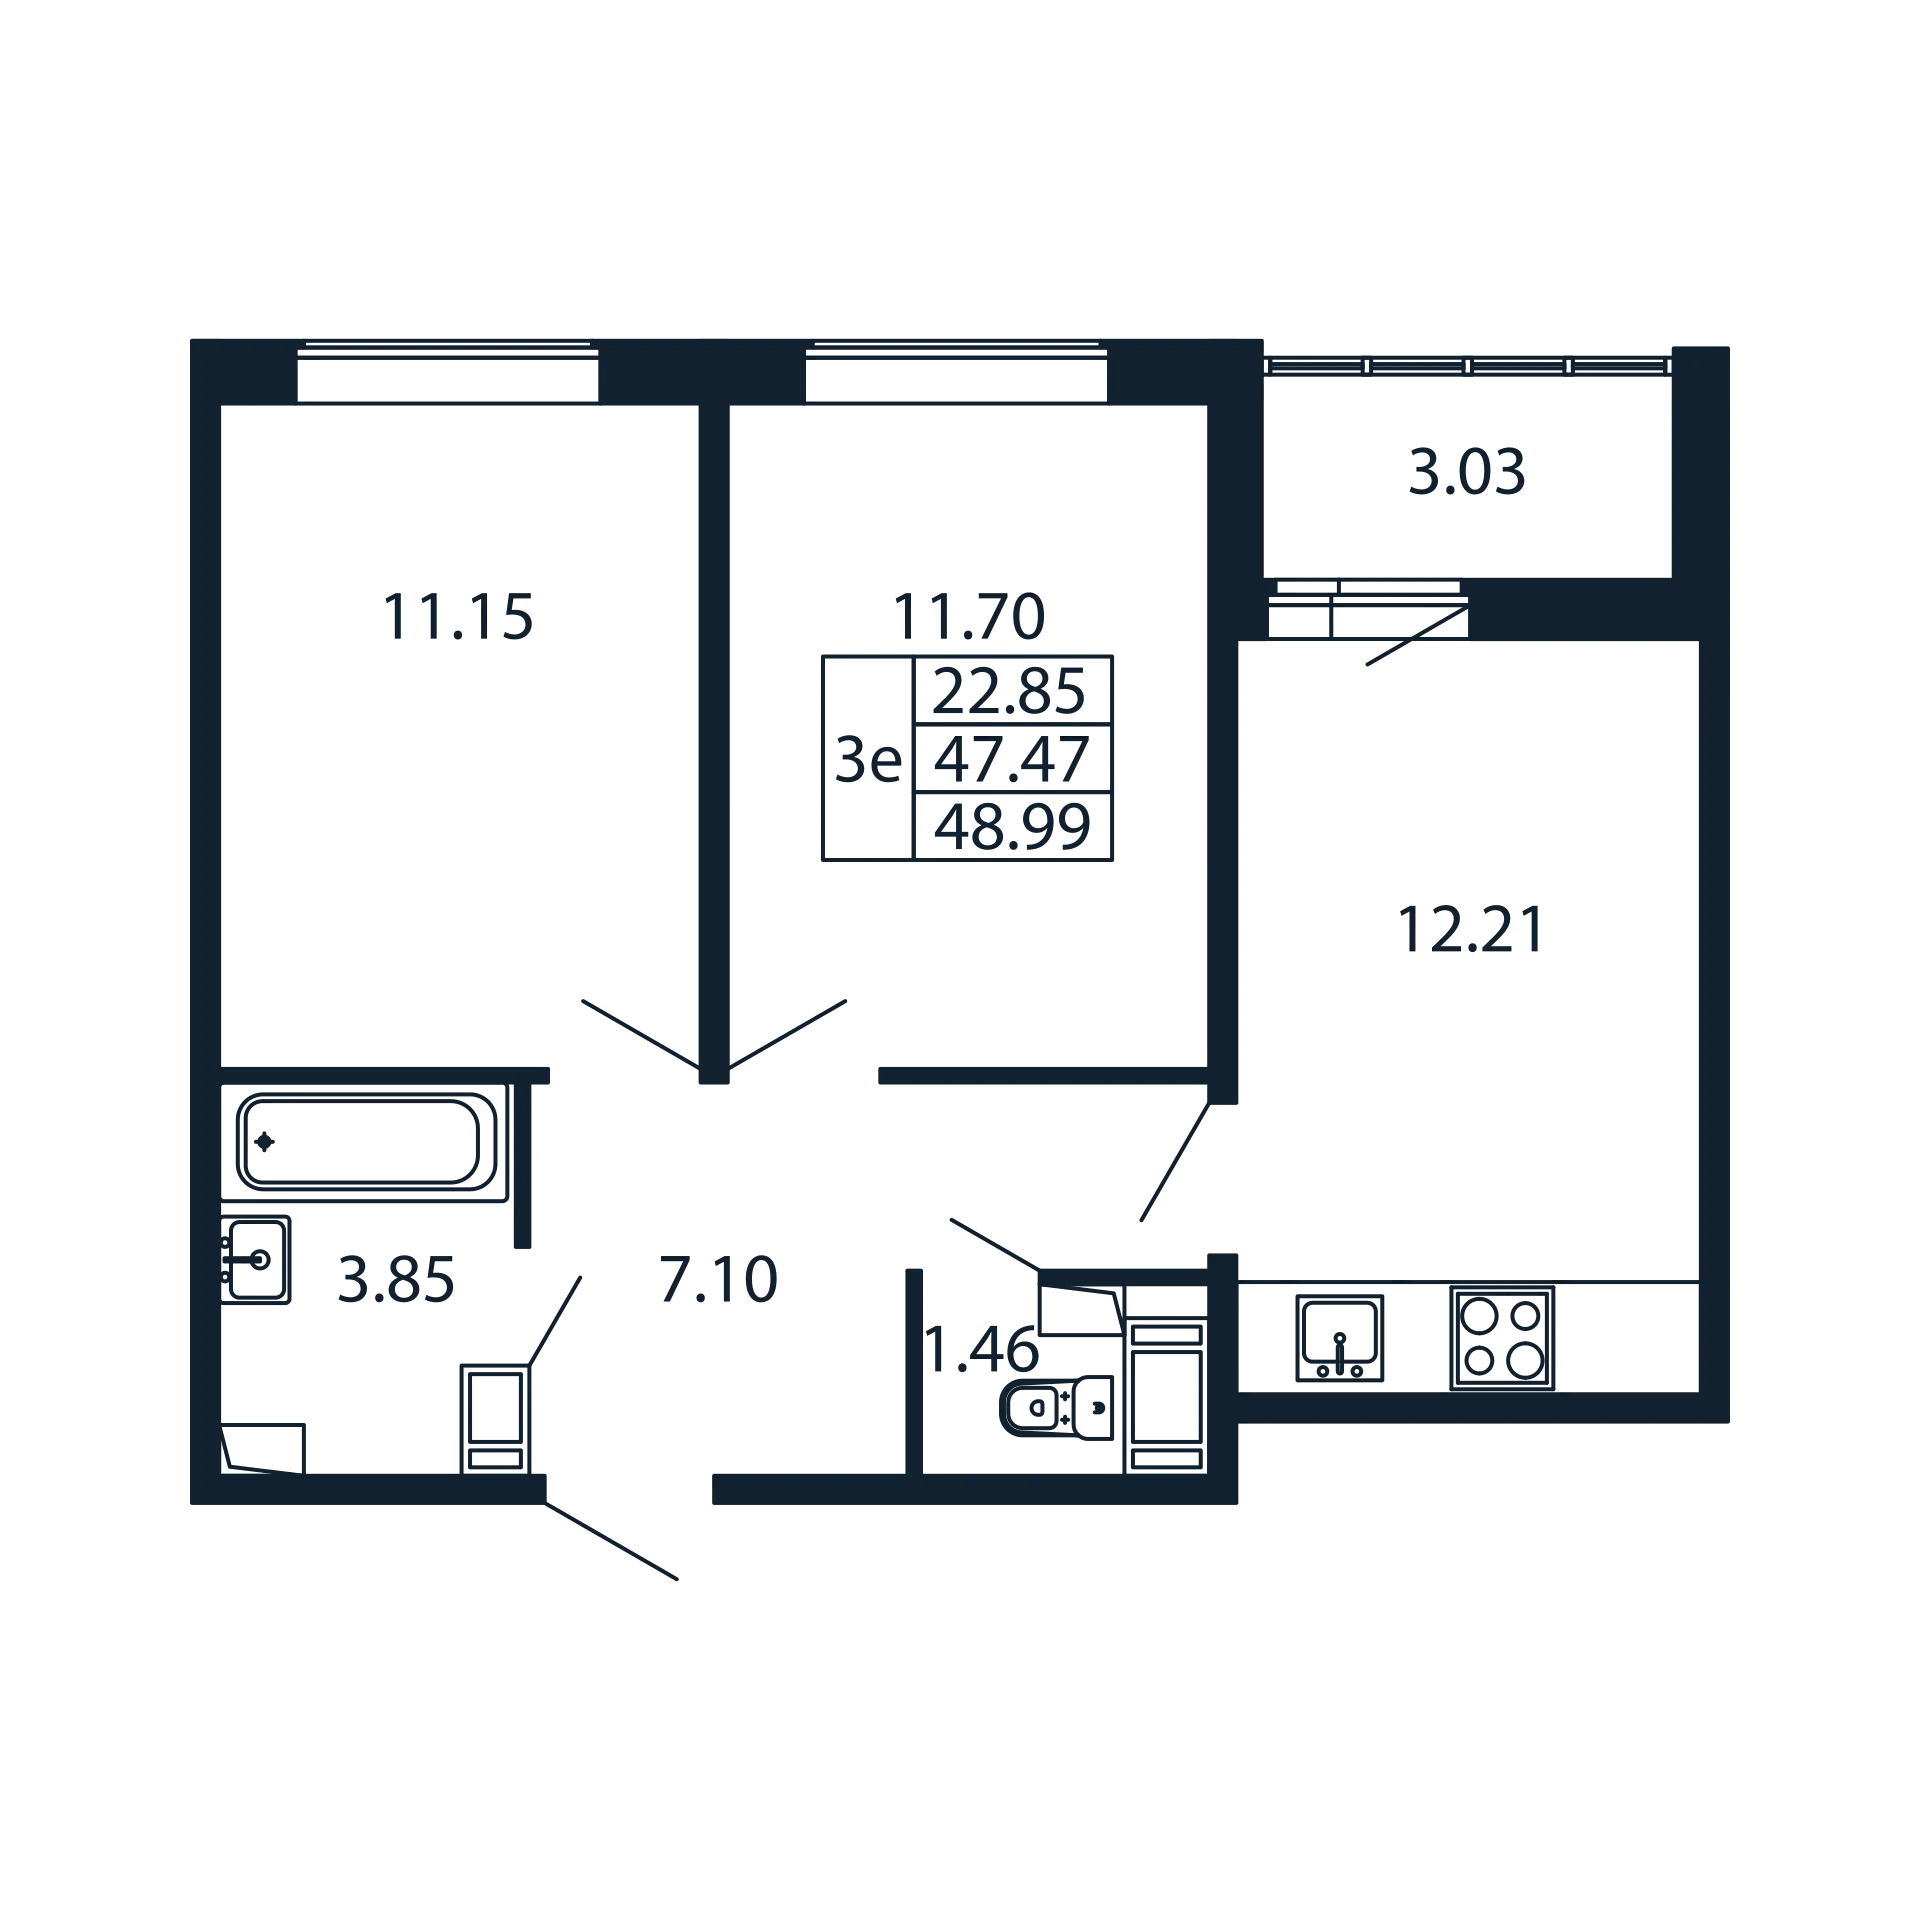 2-комнатная квартира, 47.47 м² в ЖК "Полис ЛАВрики" - планировка, фото №1